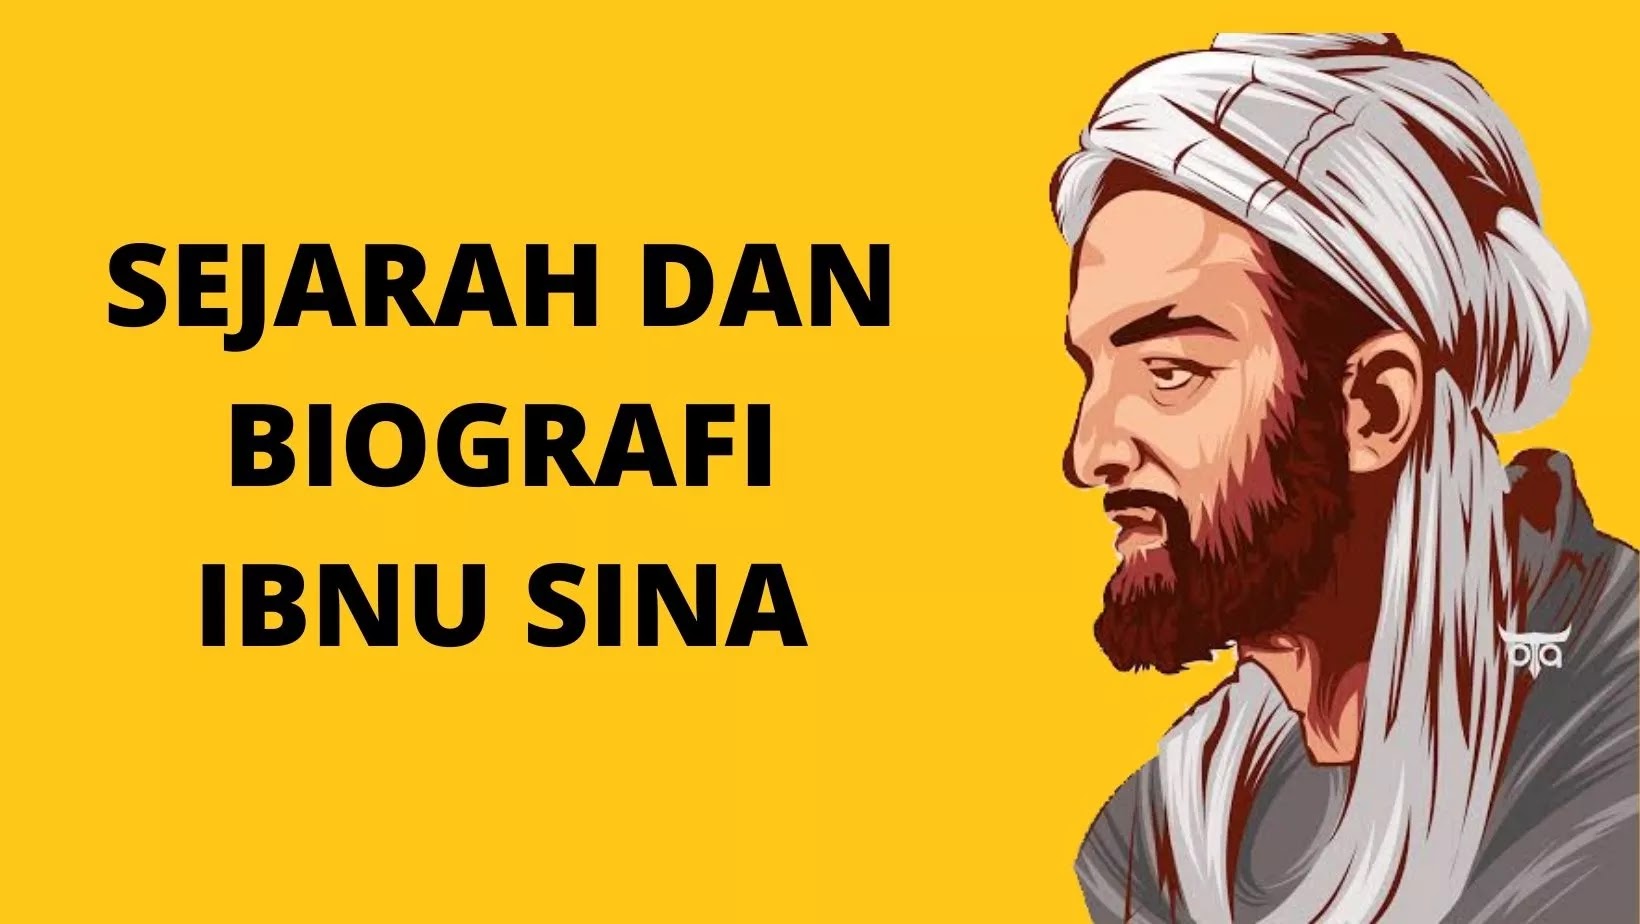 Sejarah dan Biografi Lengkap Ibnu Sina Kedokteran Islam Modern